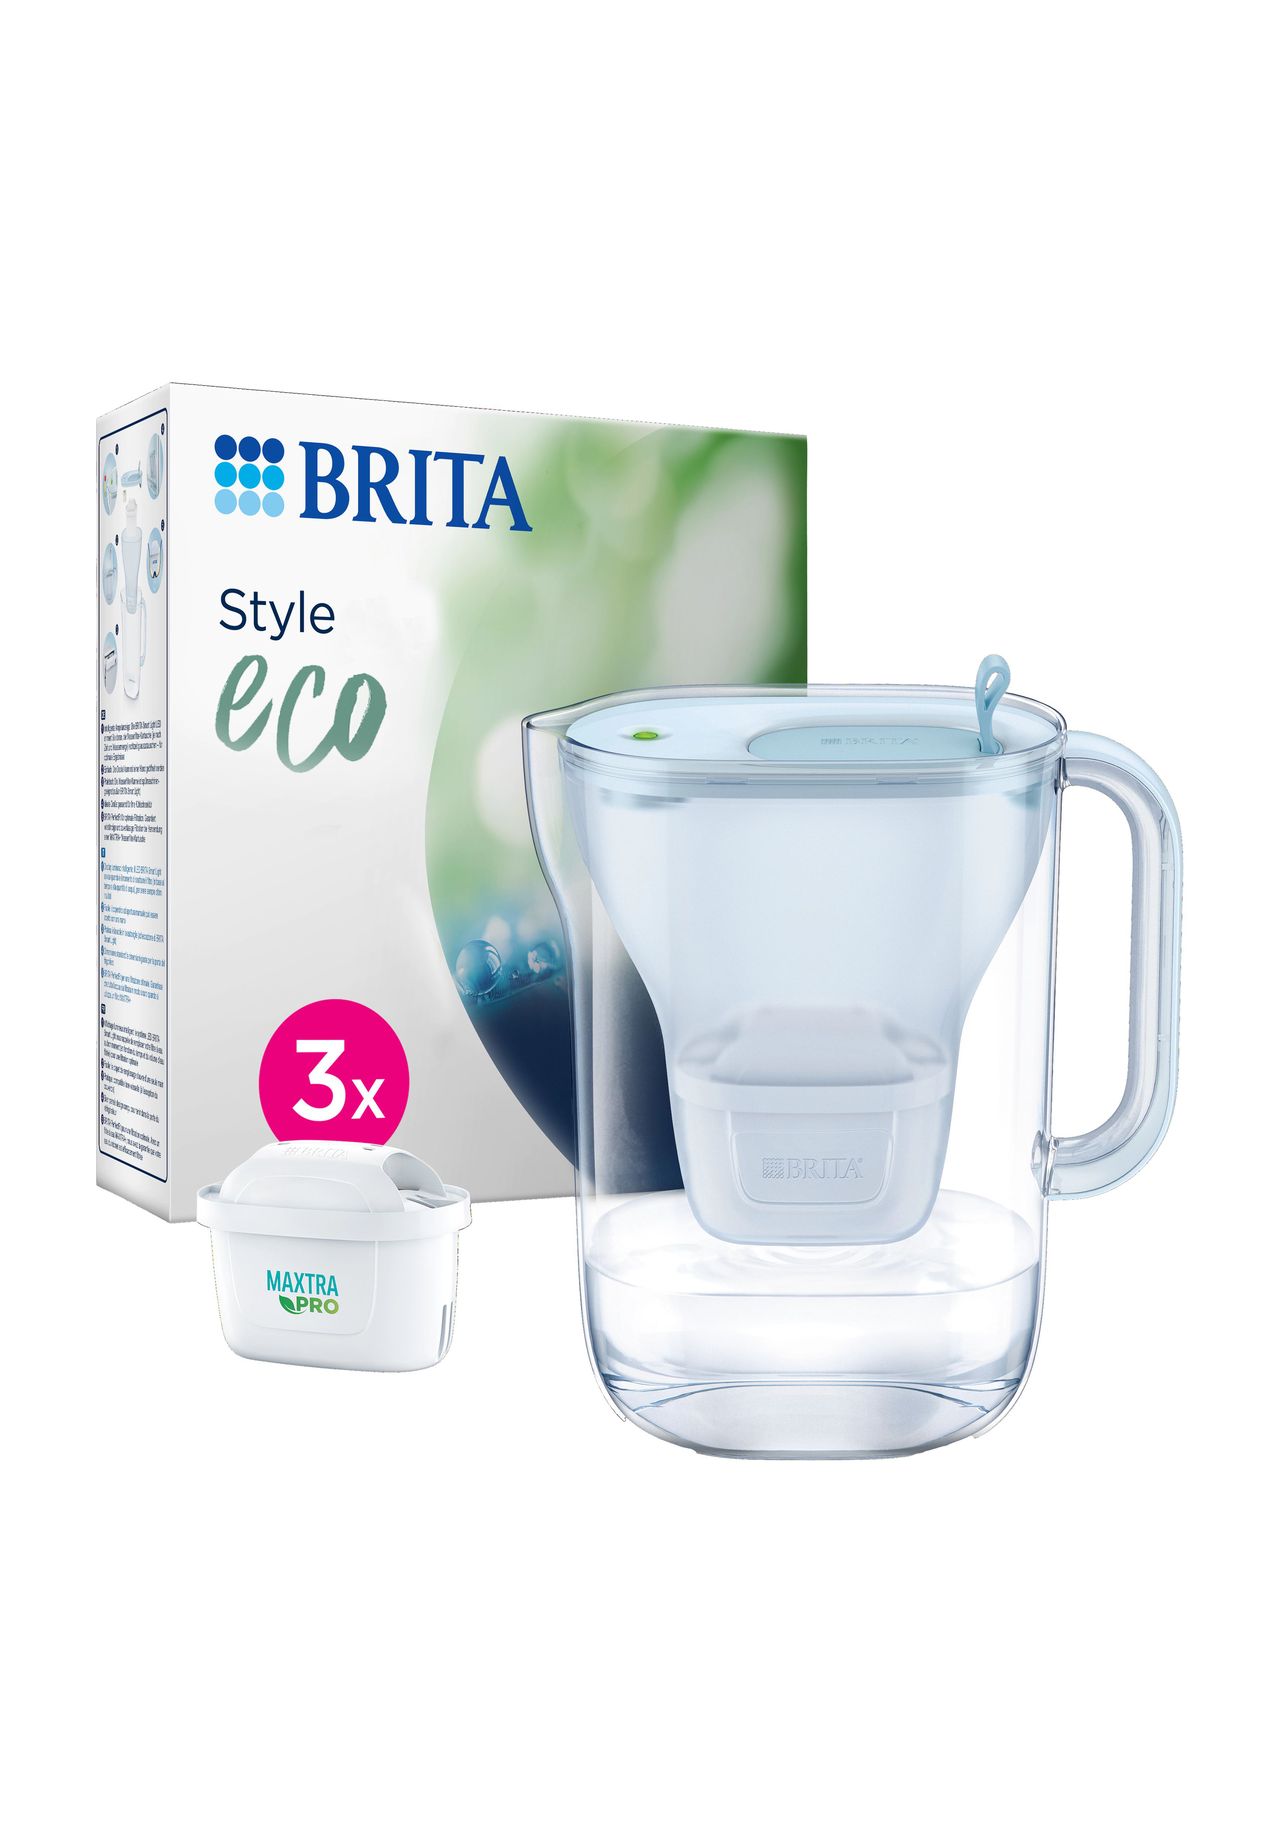 All-in-1 GALERIA 3 Pro BRITA® Maxtra Wasserfilterkanne, ECO STYLE Kartuschen, |